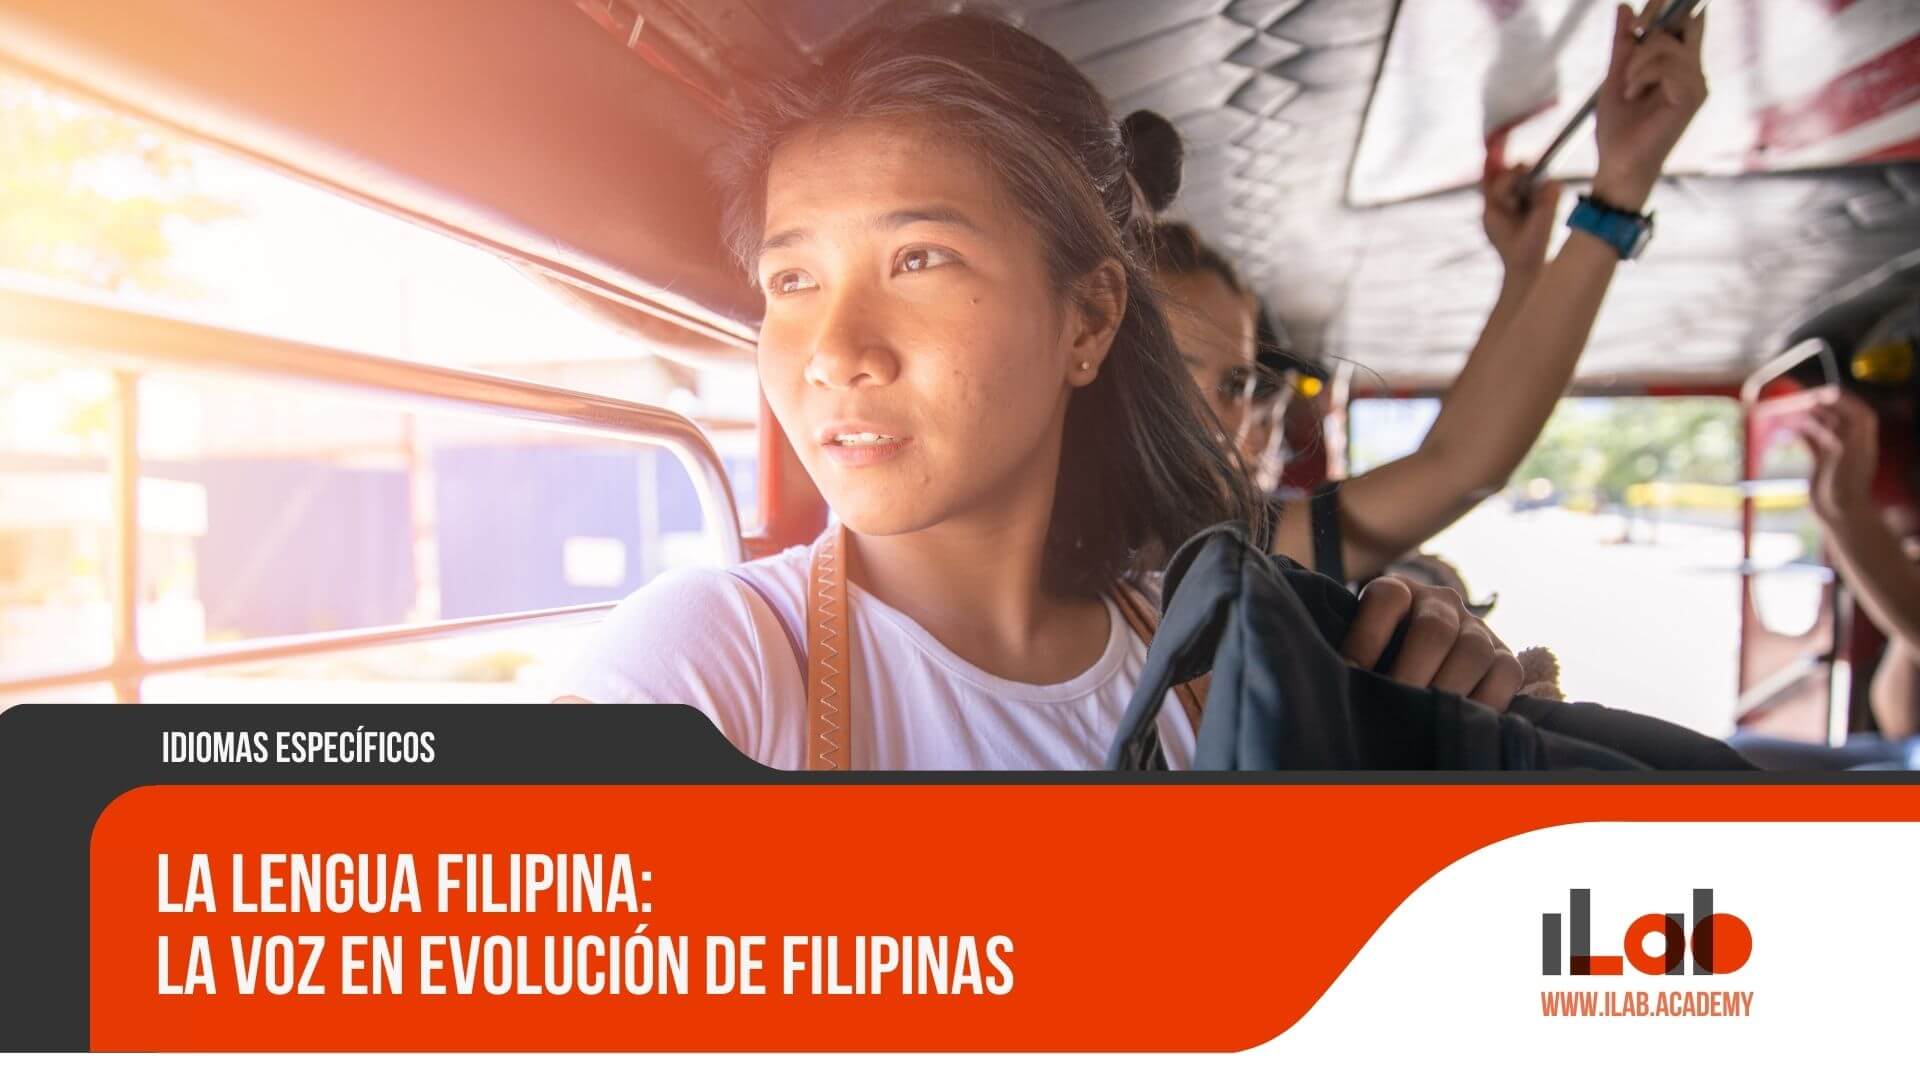 La Lengua Filipina: La voz en evolución de Filipinas